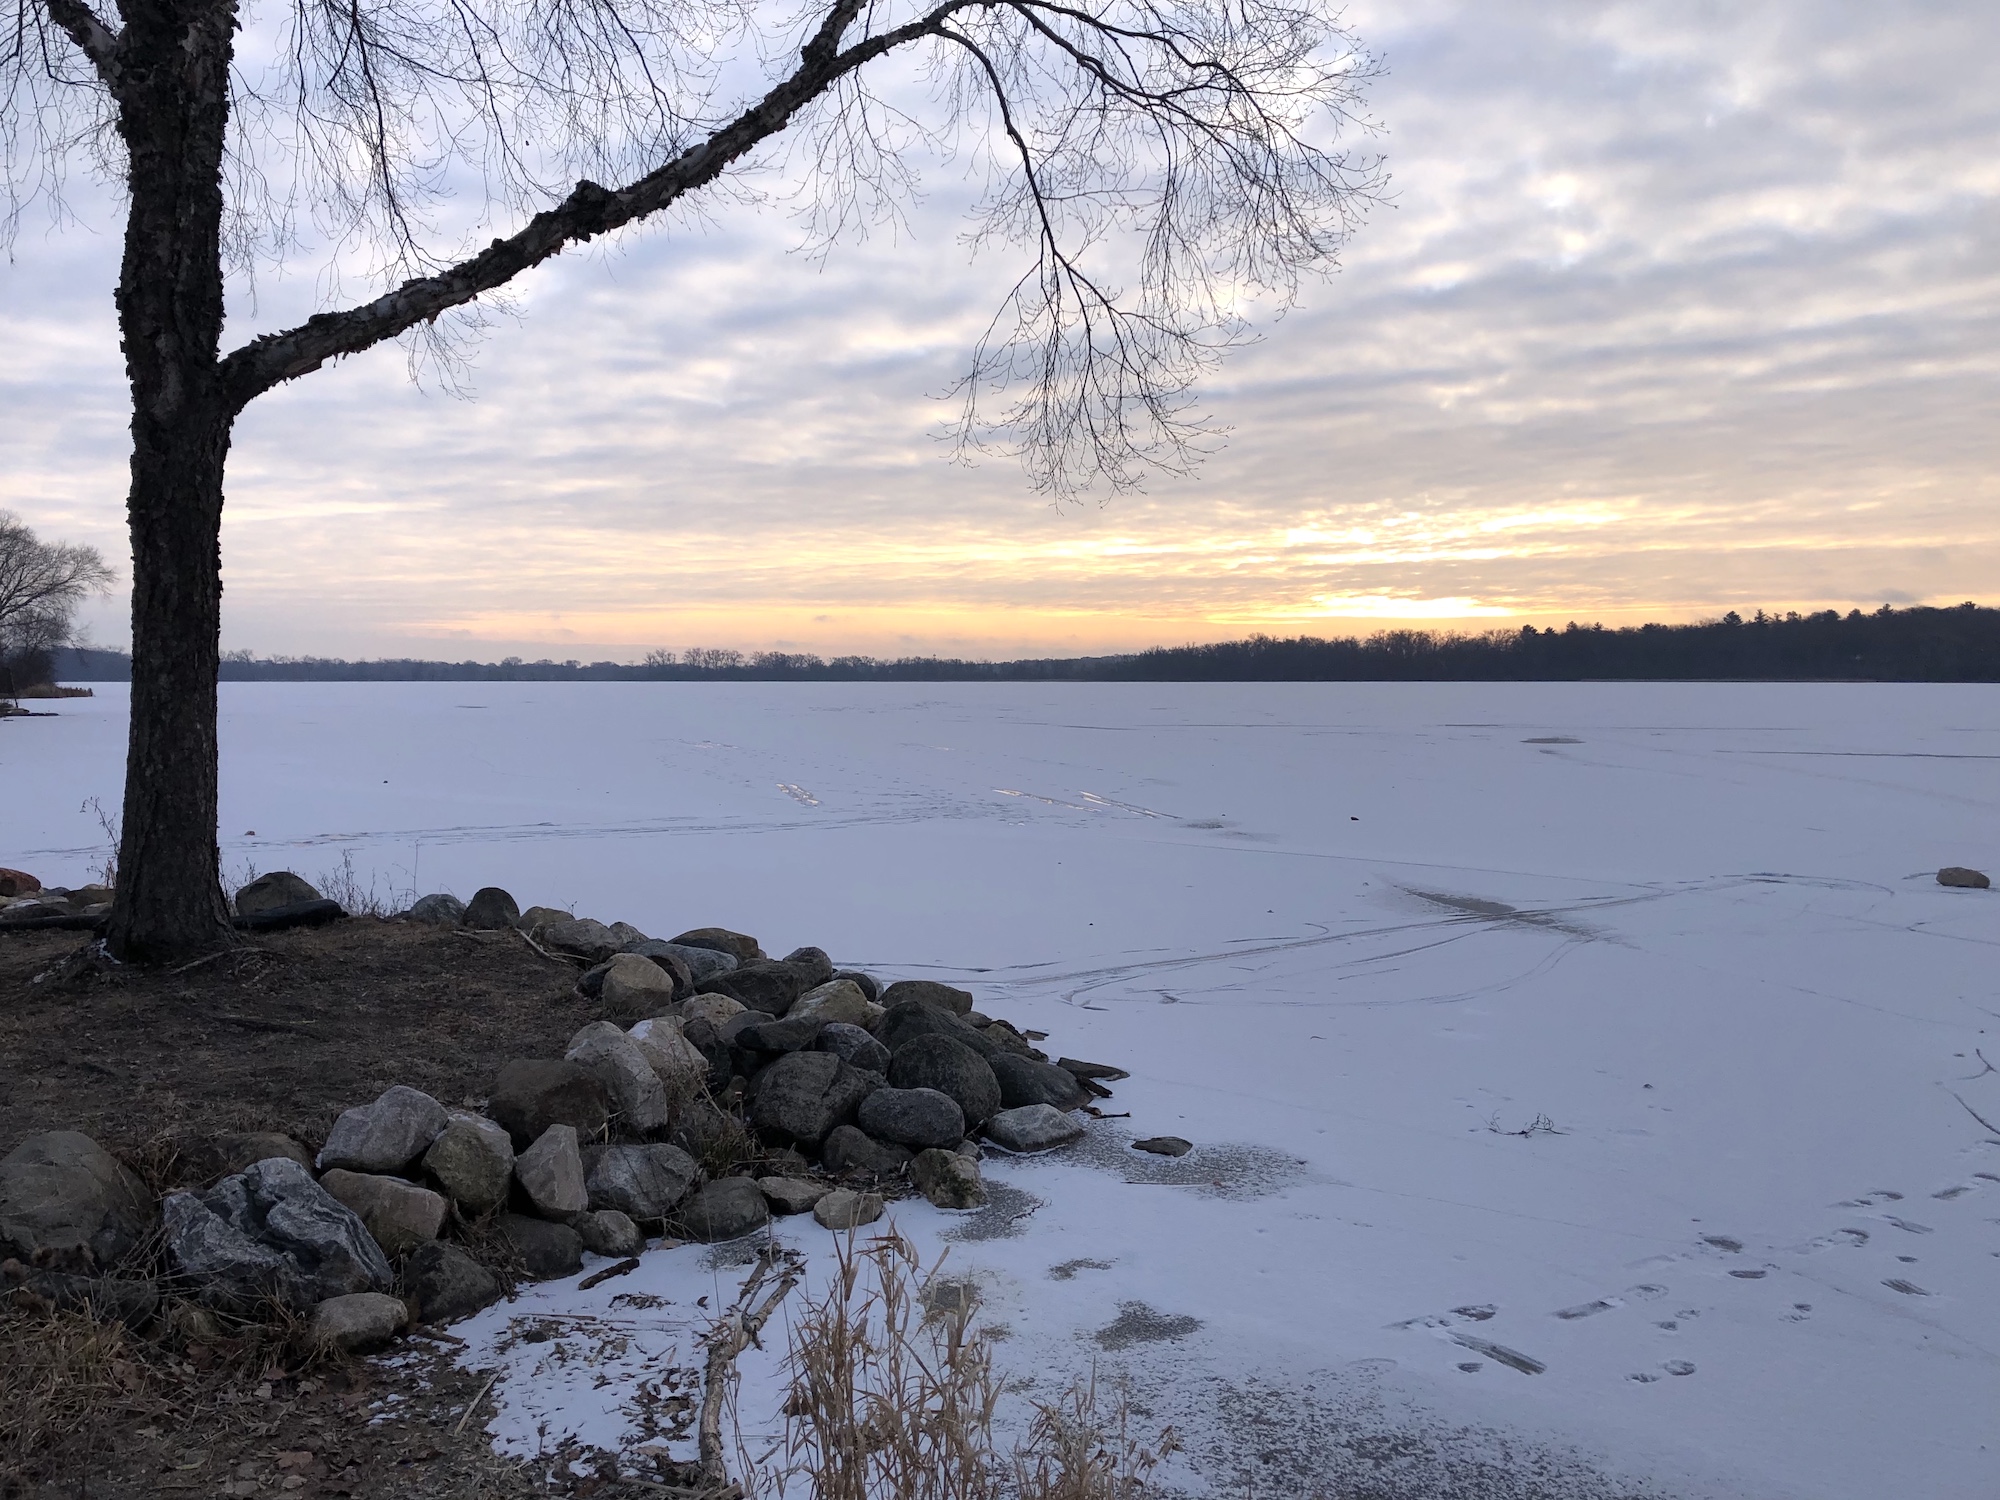 Lake Wingra on December 17, 2019.